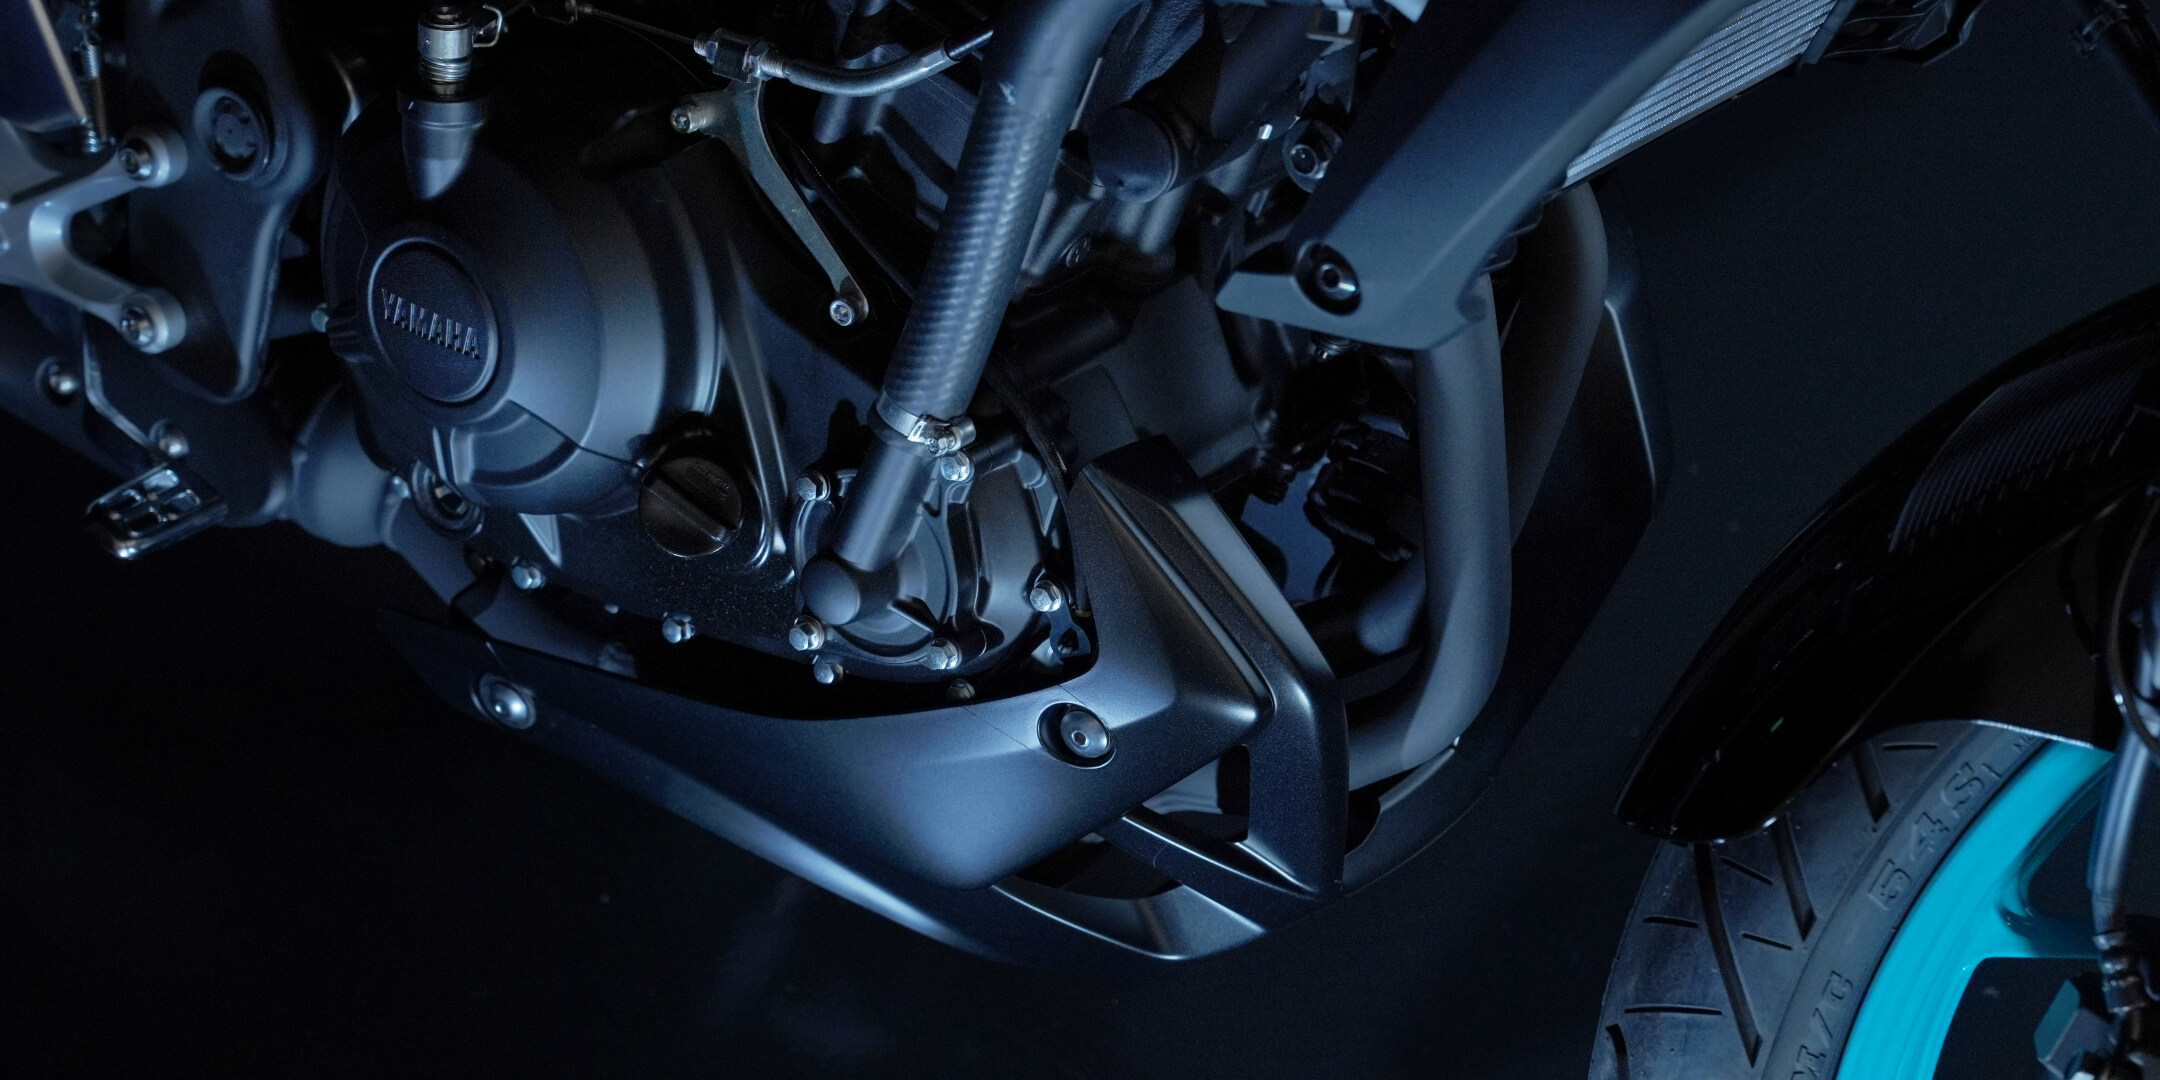 Yamaha ra mắt ‘bá chủ côn tay’ mới xịn hơn Honda Winner X và Exciter: Có phanh ABS 2 kênh, giá mềm